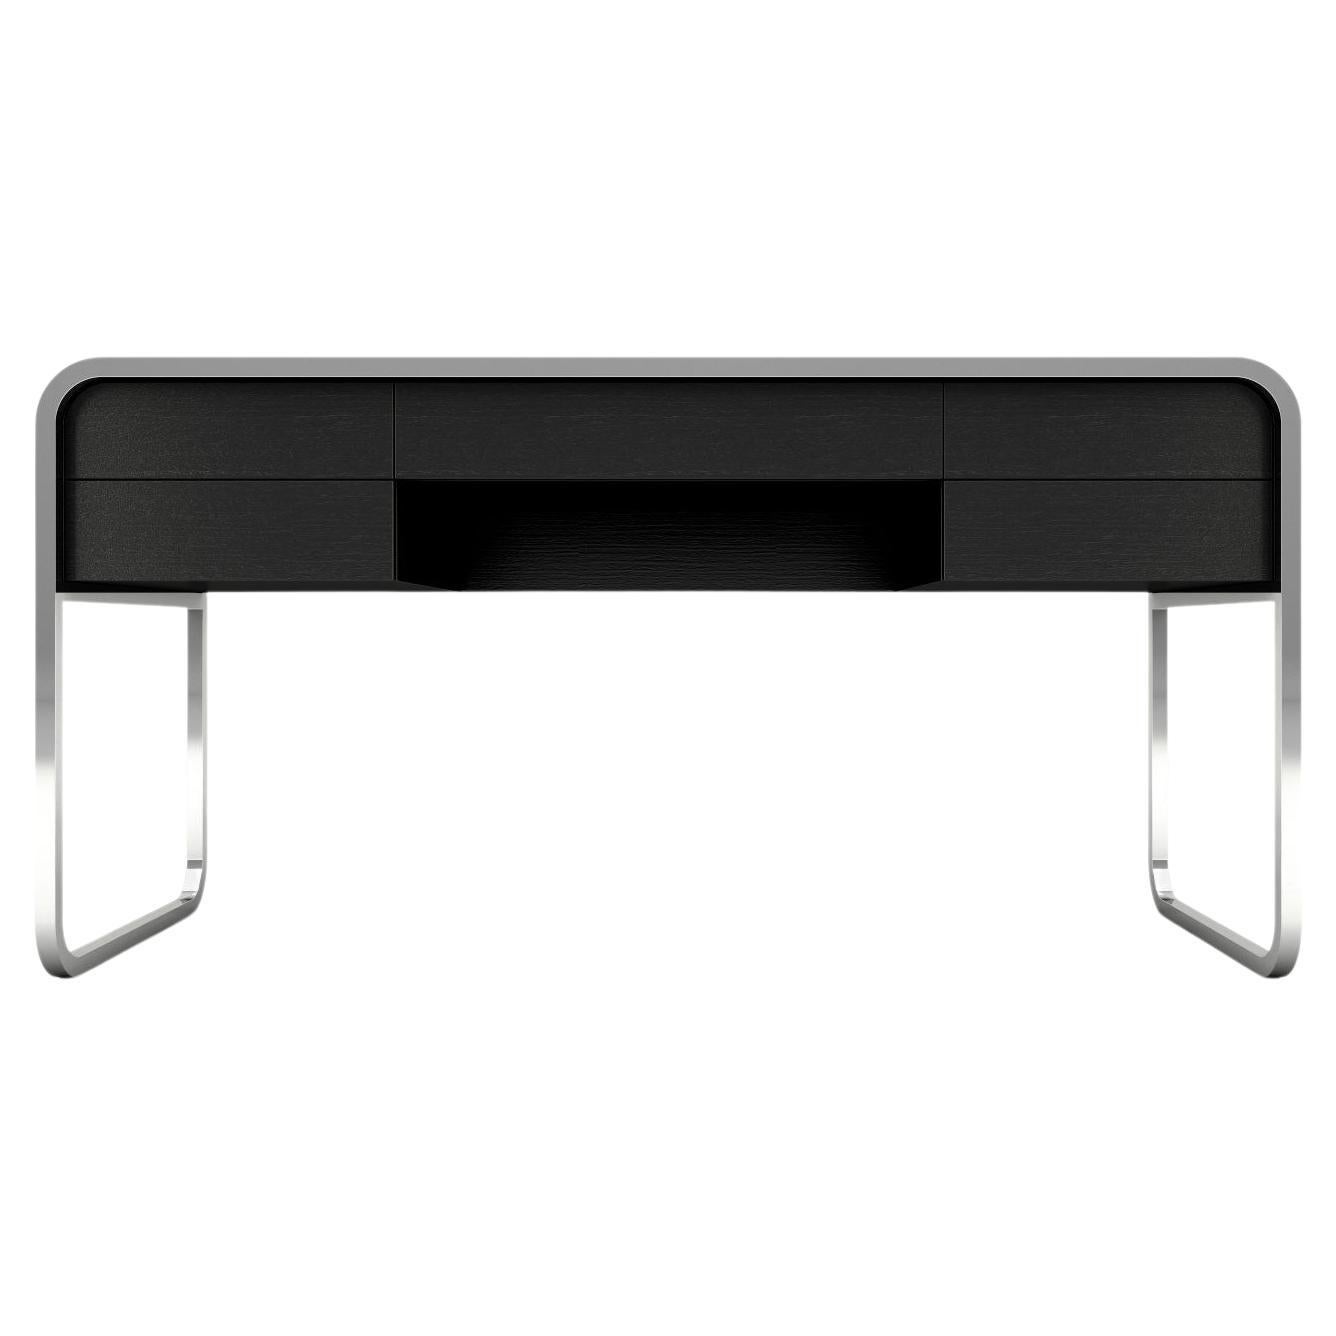 Midnight-Schreibtisch – moderner schwarz lackierter Schreibtisch mit Beinen aus Edelstahl